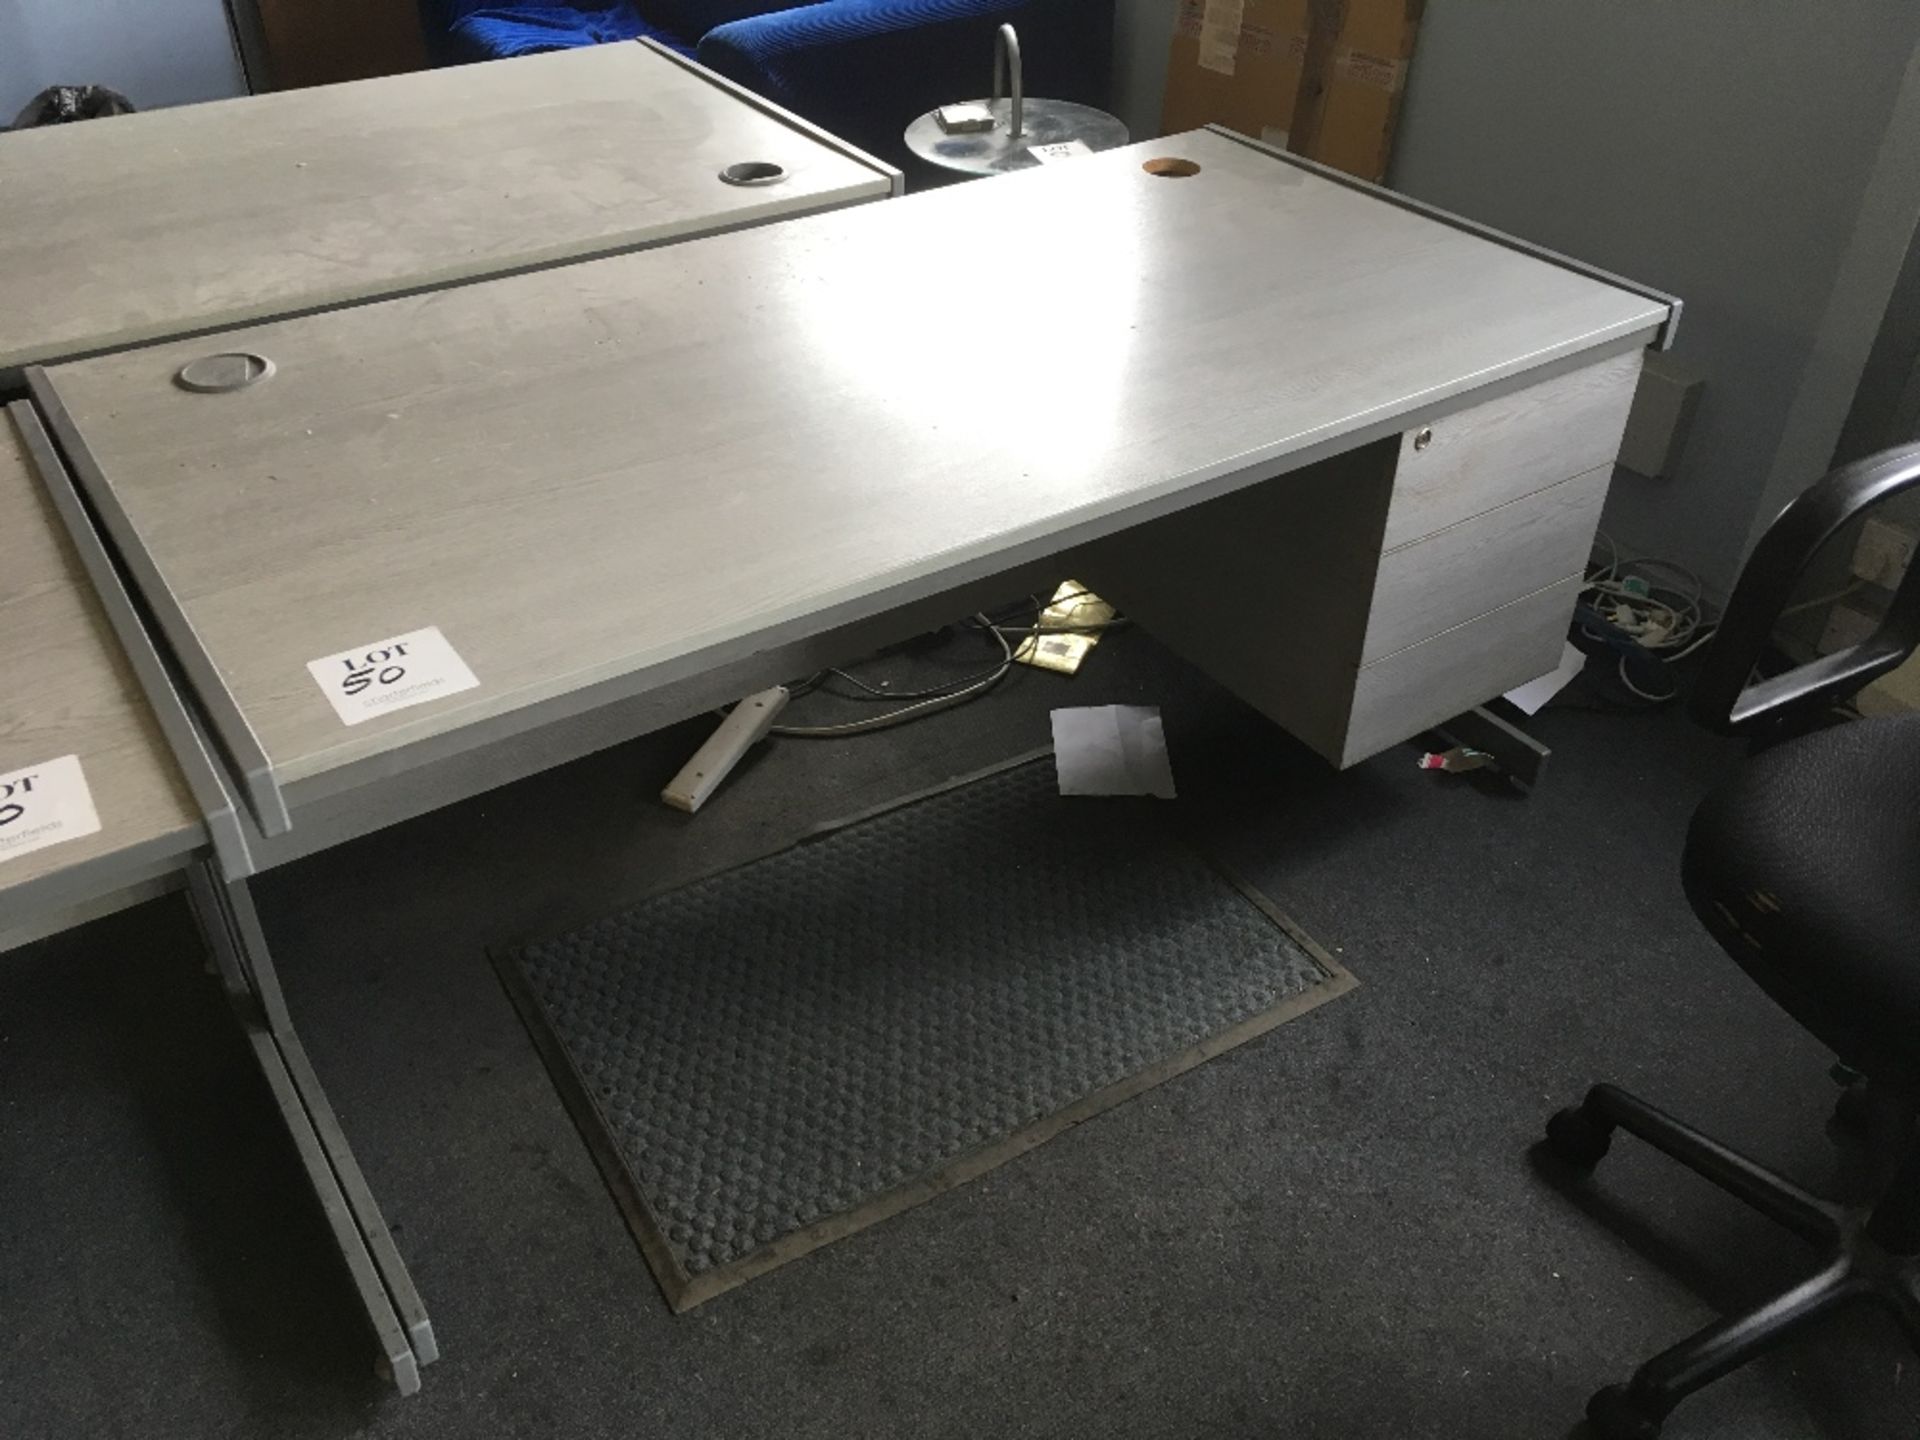 2 - 3 drawer standard desks (colour grey). 1 - Cantilever printer stand - Image 2 of 3